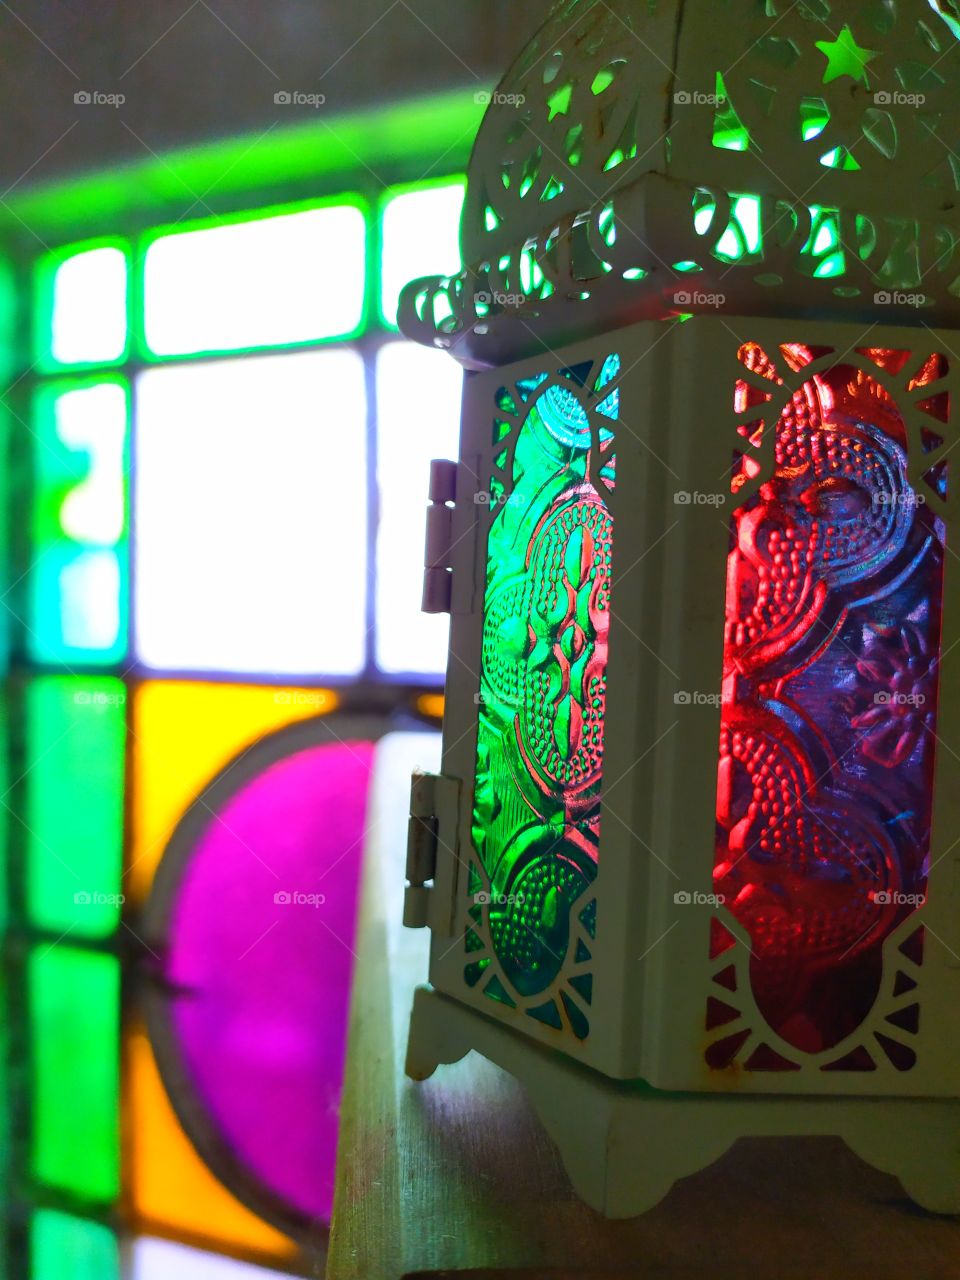 vidrios biselados de colores fuertes que inspiran al relax y la paz interior.